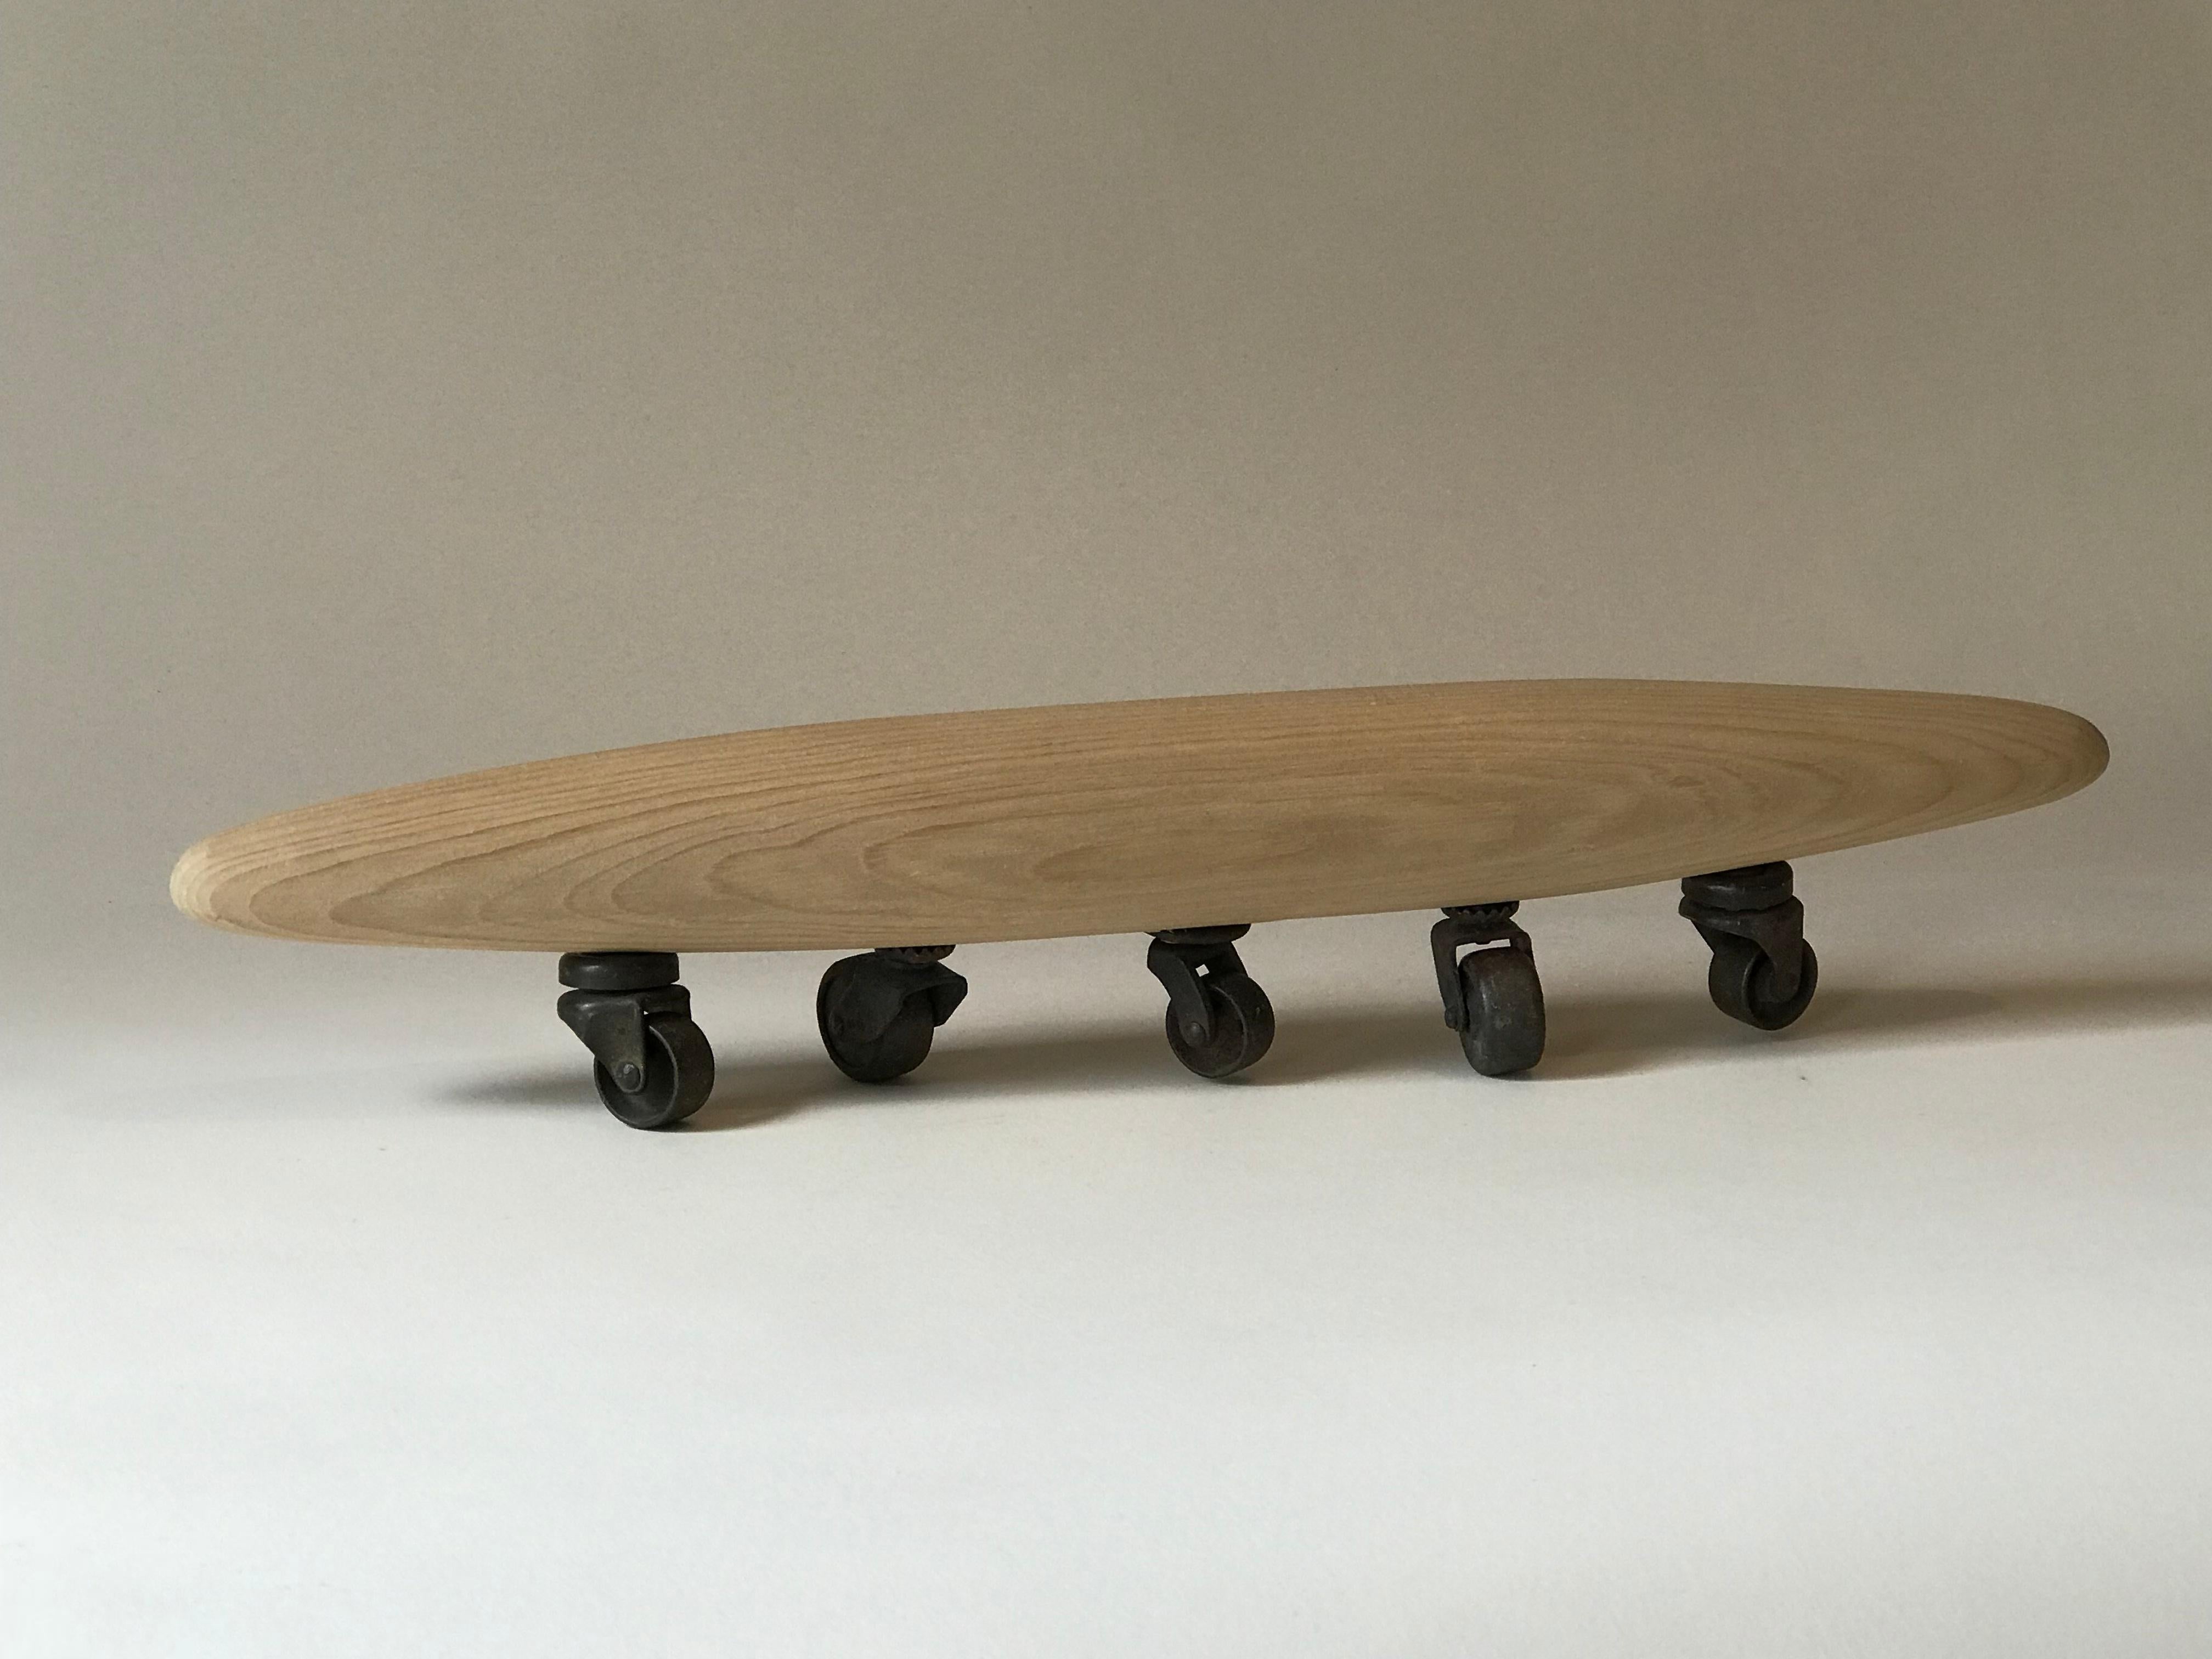 Kelly Bugden + Van Wifvat Abstract Sculpture - Abstract Skateboard wood Sculpture: 'Wheels'